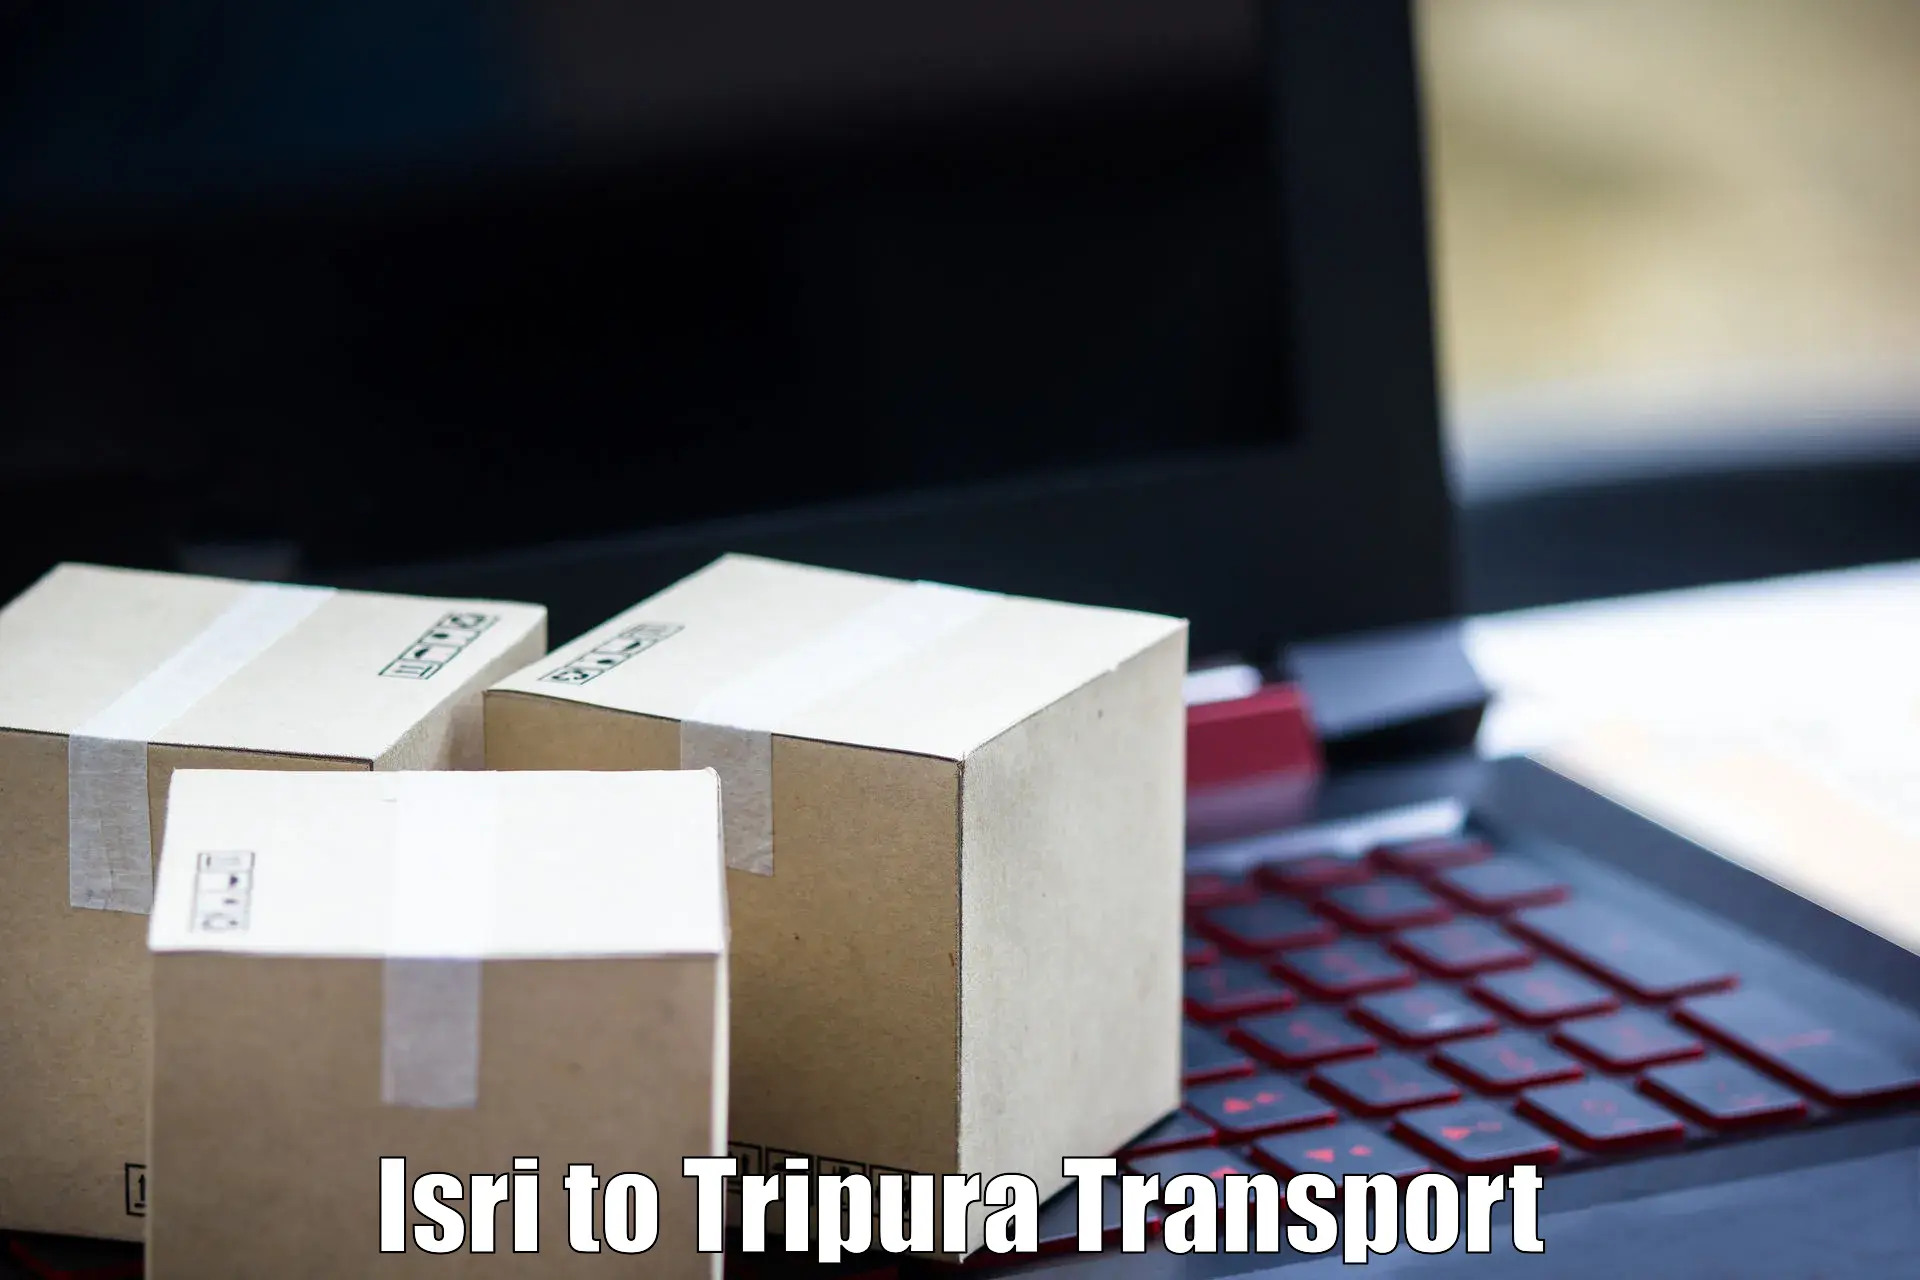 Transport in sharing Isri to IIIT Agartala